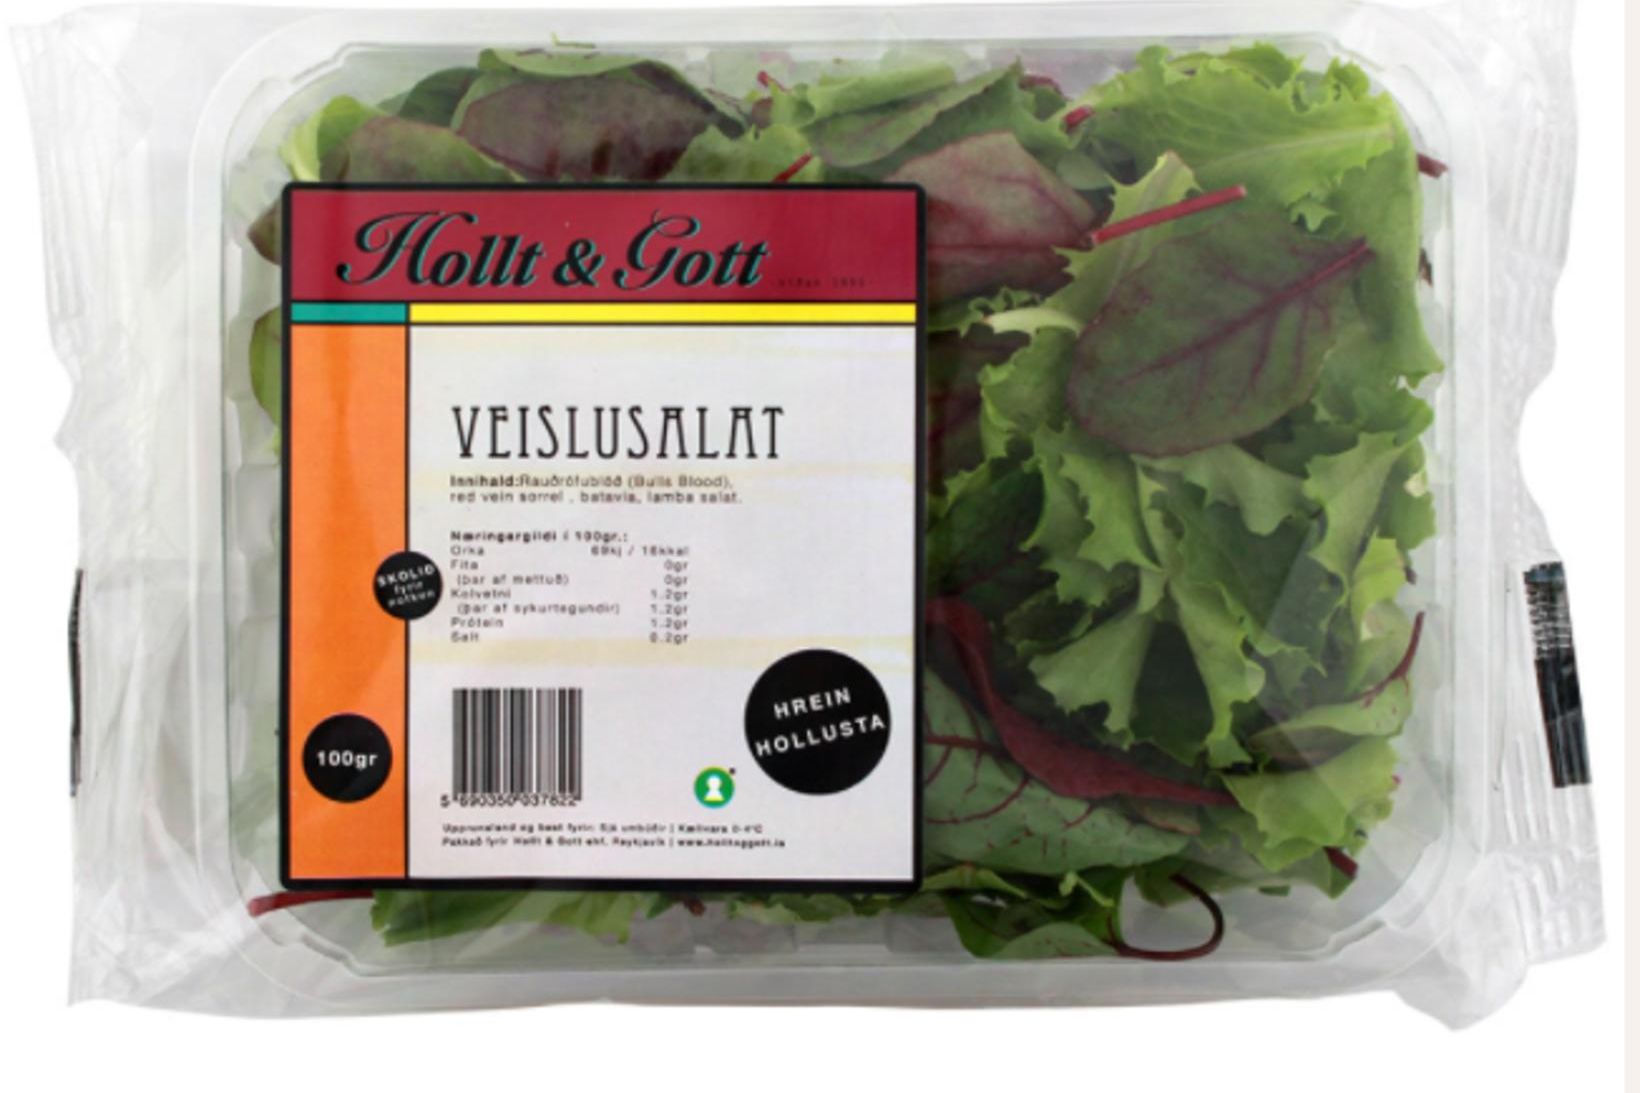 Svona líta salatpakkningarnar út sem verið er að kalla inn.